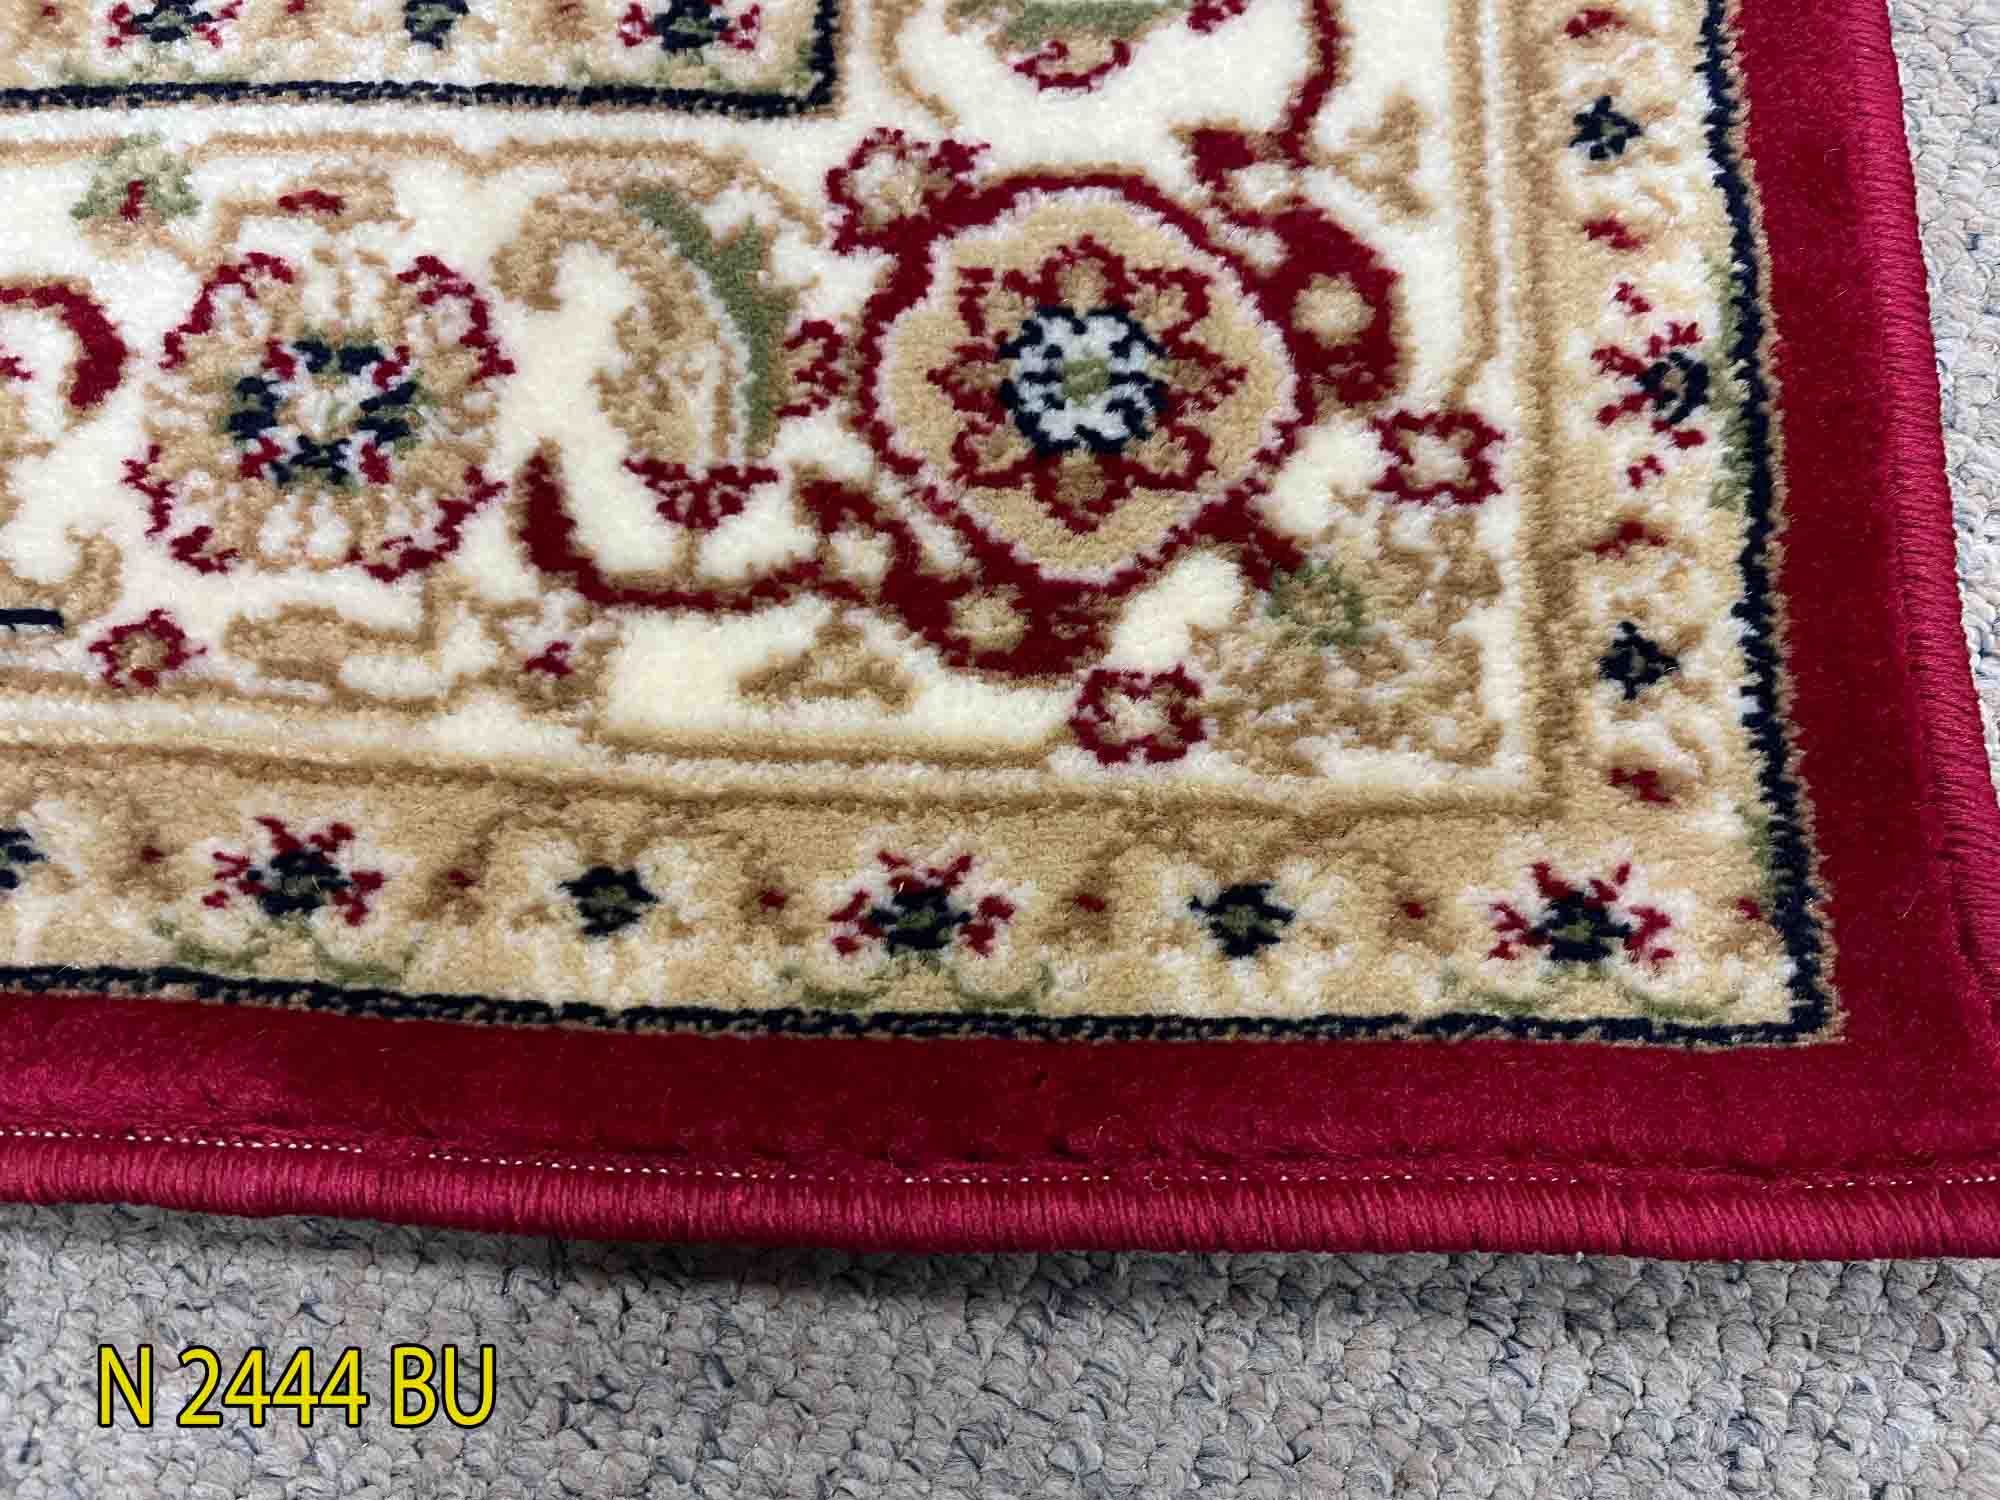  Thảm Sofa Trang trí Giá rẻ màu đỏ YL N 2444 BU 